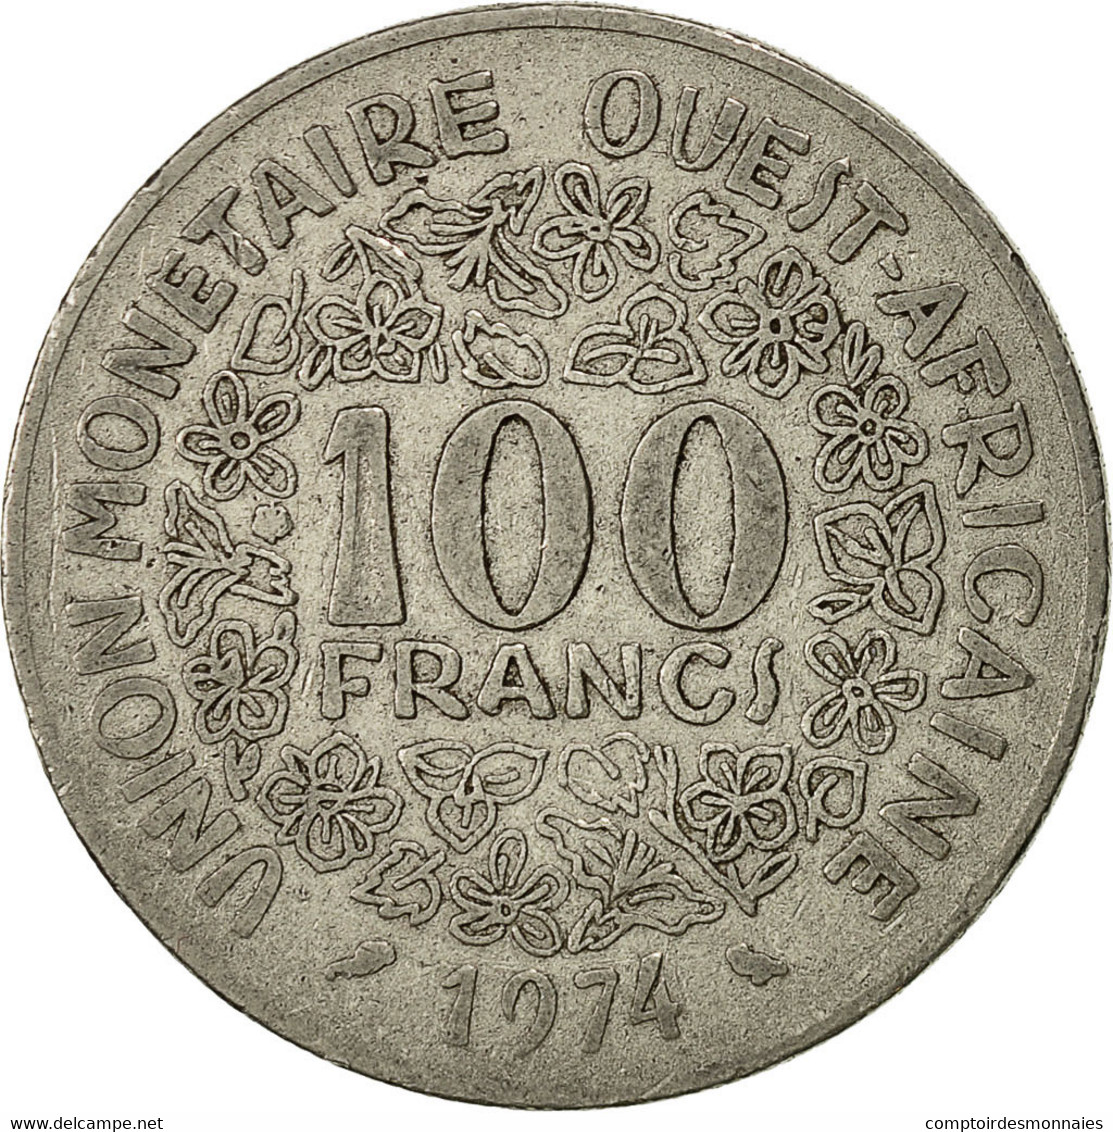 Monnaie, West African States, 100 Francs, 1974, Paris, TB+, Nickel, KM:4 - Côte-d'Ivoire